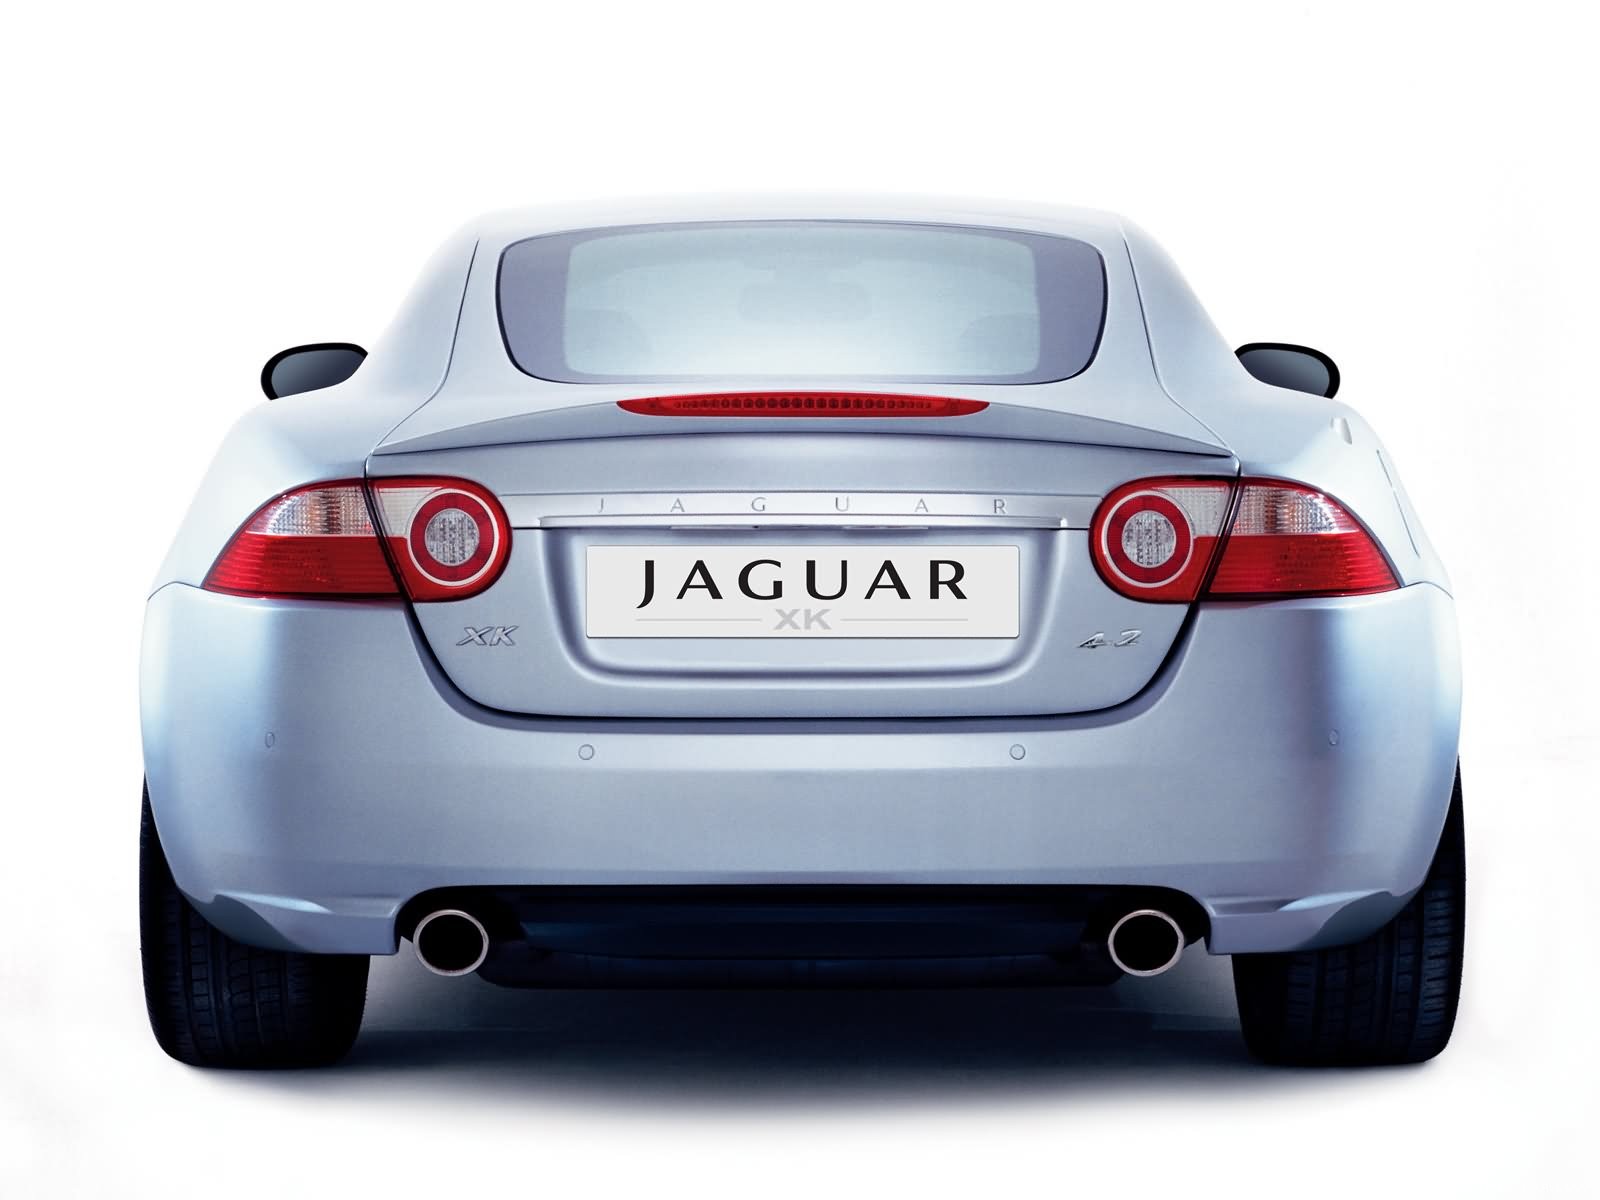 壁纸1600x1200捷豹 Jaguar XK 4 2壁纸 捷豹(Jaguar)XK 4.2壁纸 捷豹(Jaguar)XK 4.2图片 捷豹(Jaguar)XK 4.2素材 汽车壁纸 汽车图库 汽车图片素材桌面壁纸